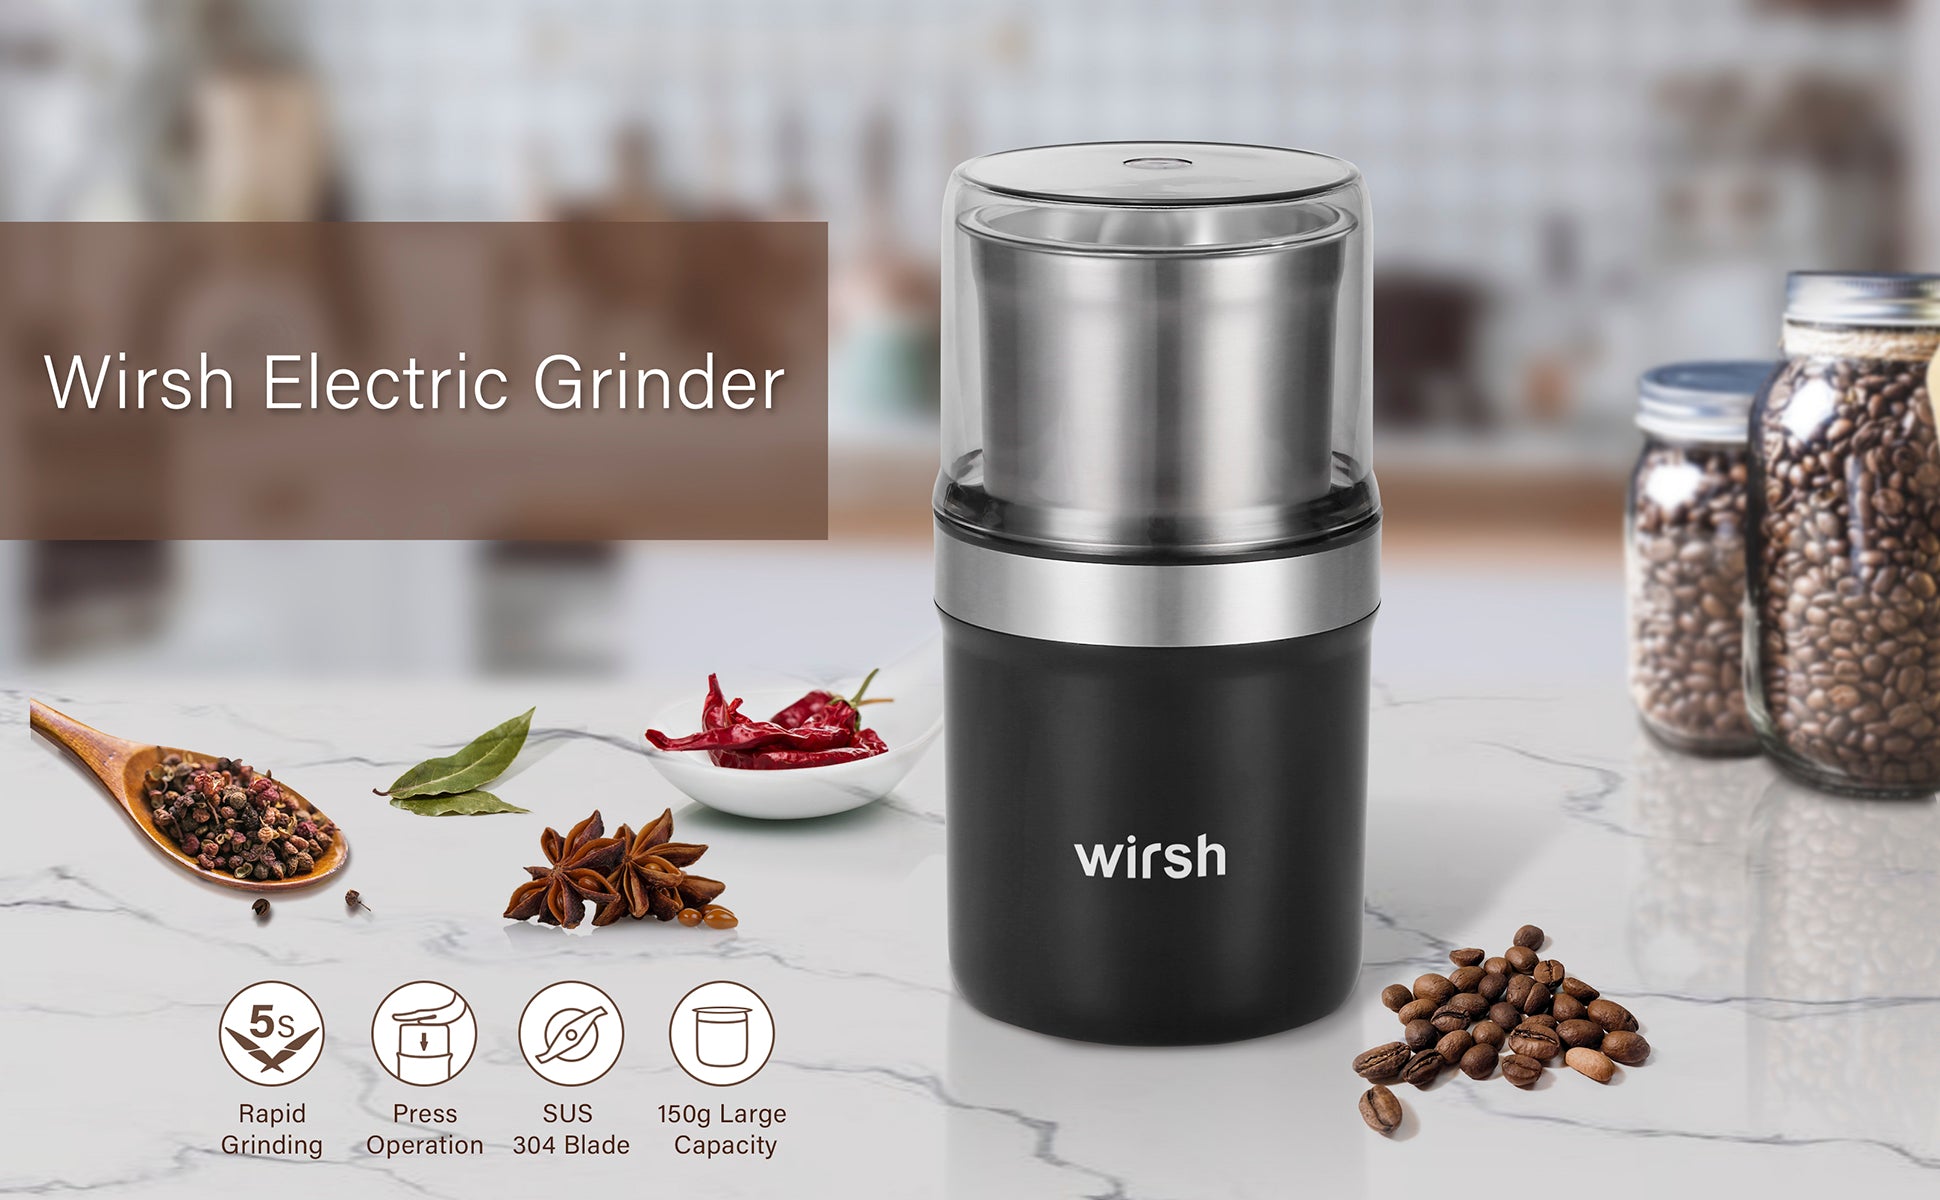 Wirsh Coffee Grinder - Herb grinder with Stainless Steel Blades